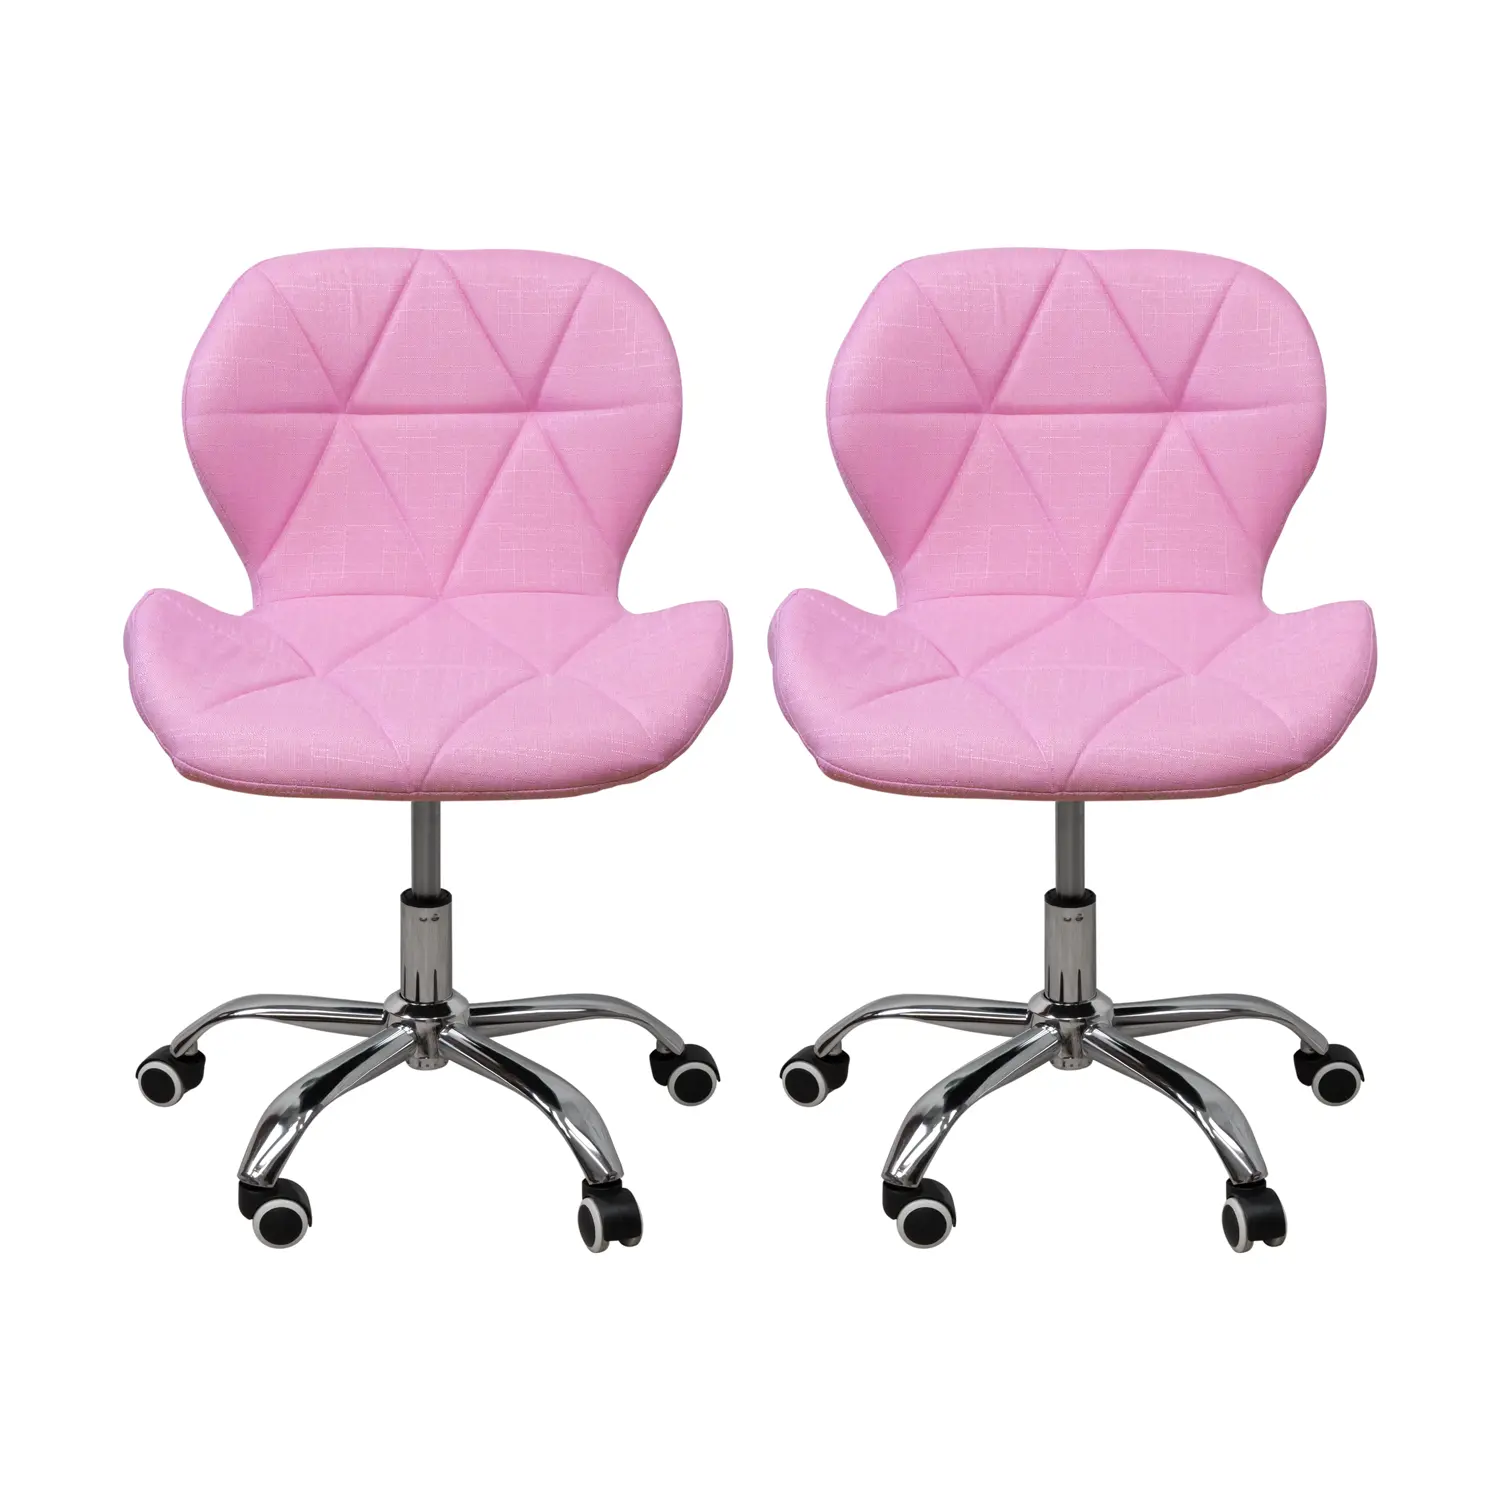 Gurulós szék, irodai szék rózsaszín 2db-os kiszerelés (GURULÓS-SZÉK-2-RÓZSASZÍN)